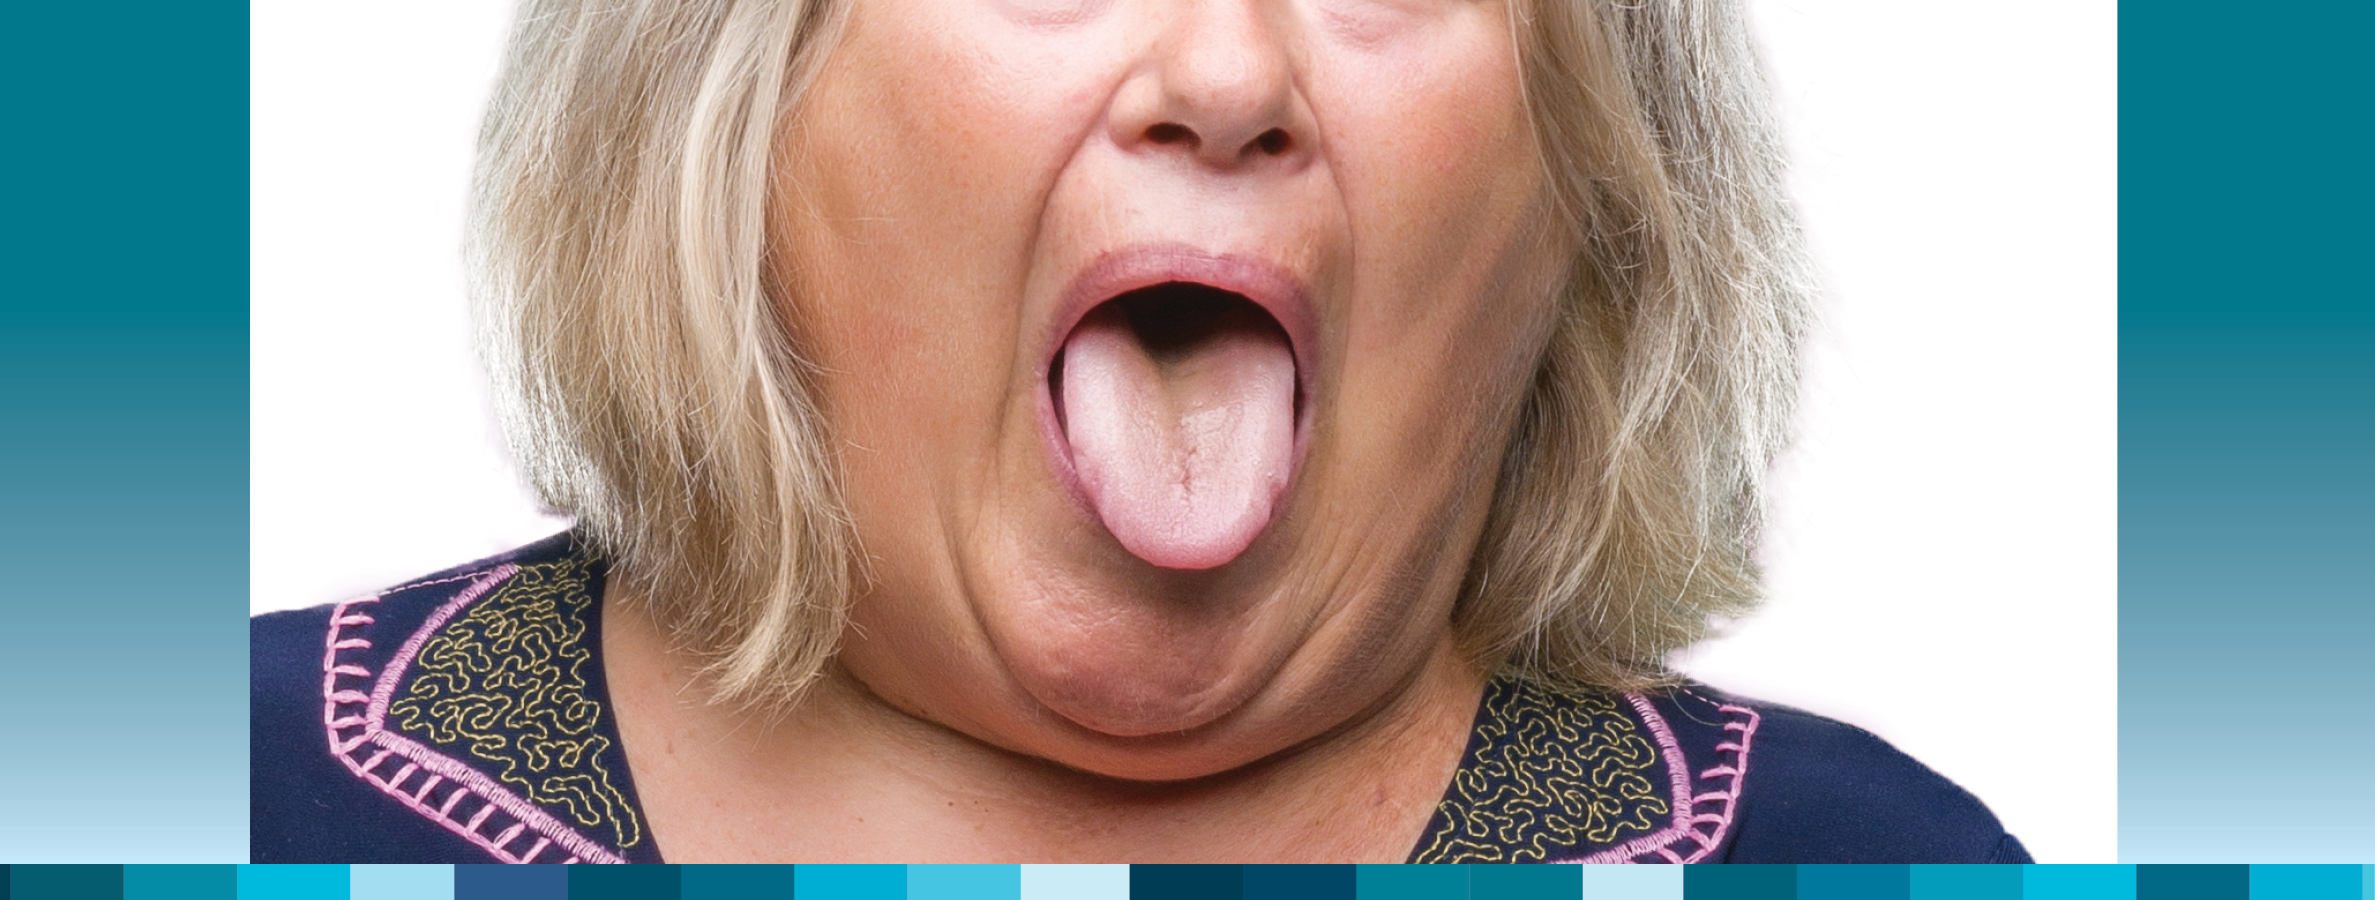 Patient with a 'big fat tongue' (BFT)